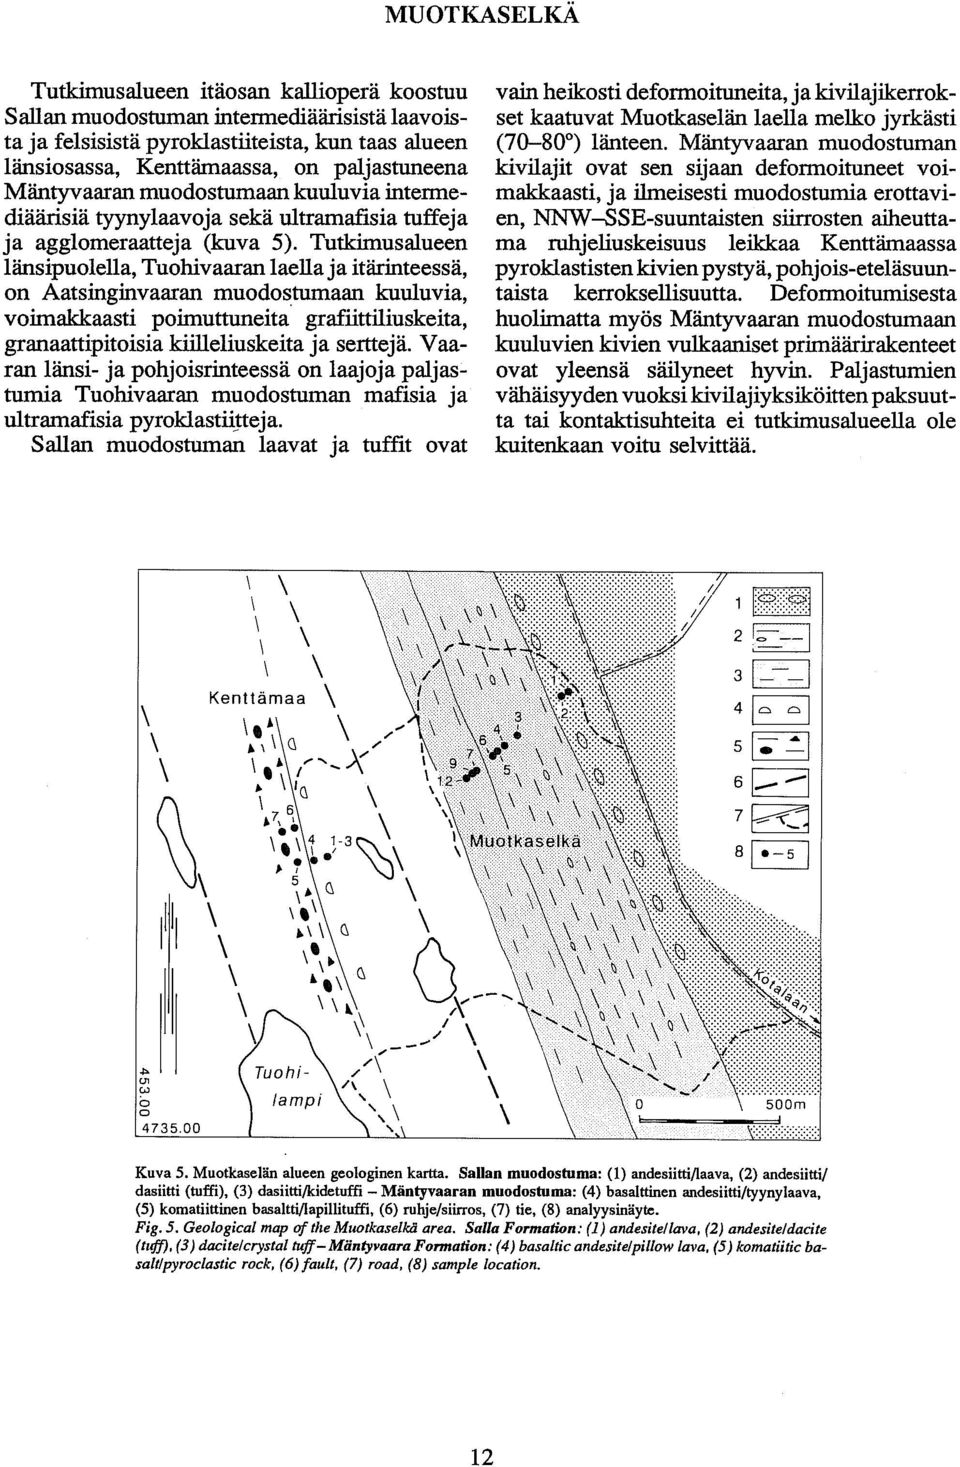 Tutkimusalueen länsipuolella, Tuohivaaran laella ja itarinteessa, on Aatsinginvaaran muodostumaan kuuluvia, voimakkaasti poim~ttuneita' grafiittiliuskeita, granaattipitoisia kiilleliuskeita ja